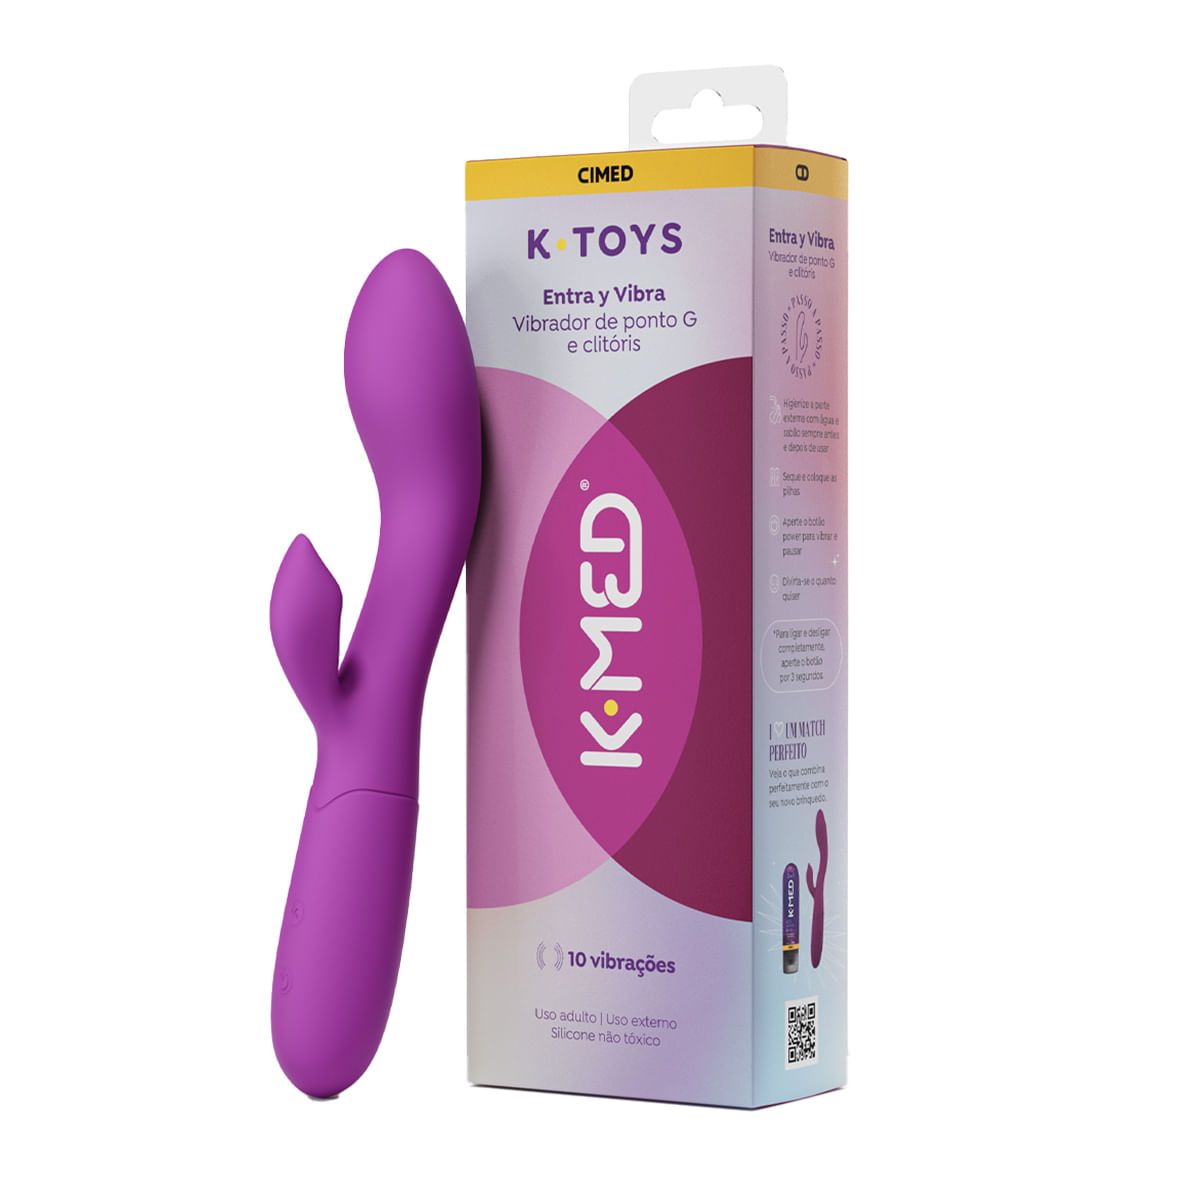 K-Toys Entra y Vibra Vibrador Ponto G e Clitóris com 10 Modos de Vibração Cimed